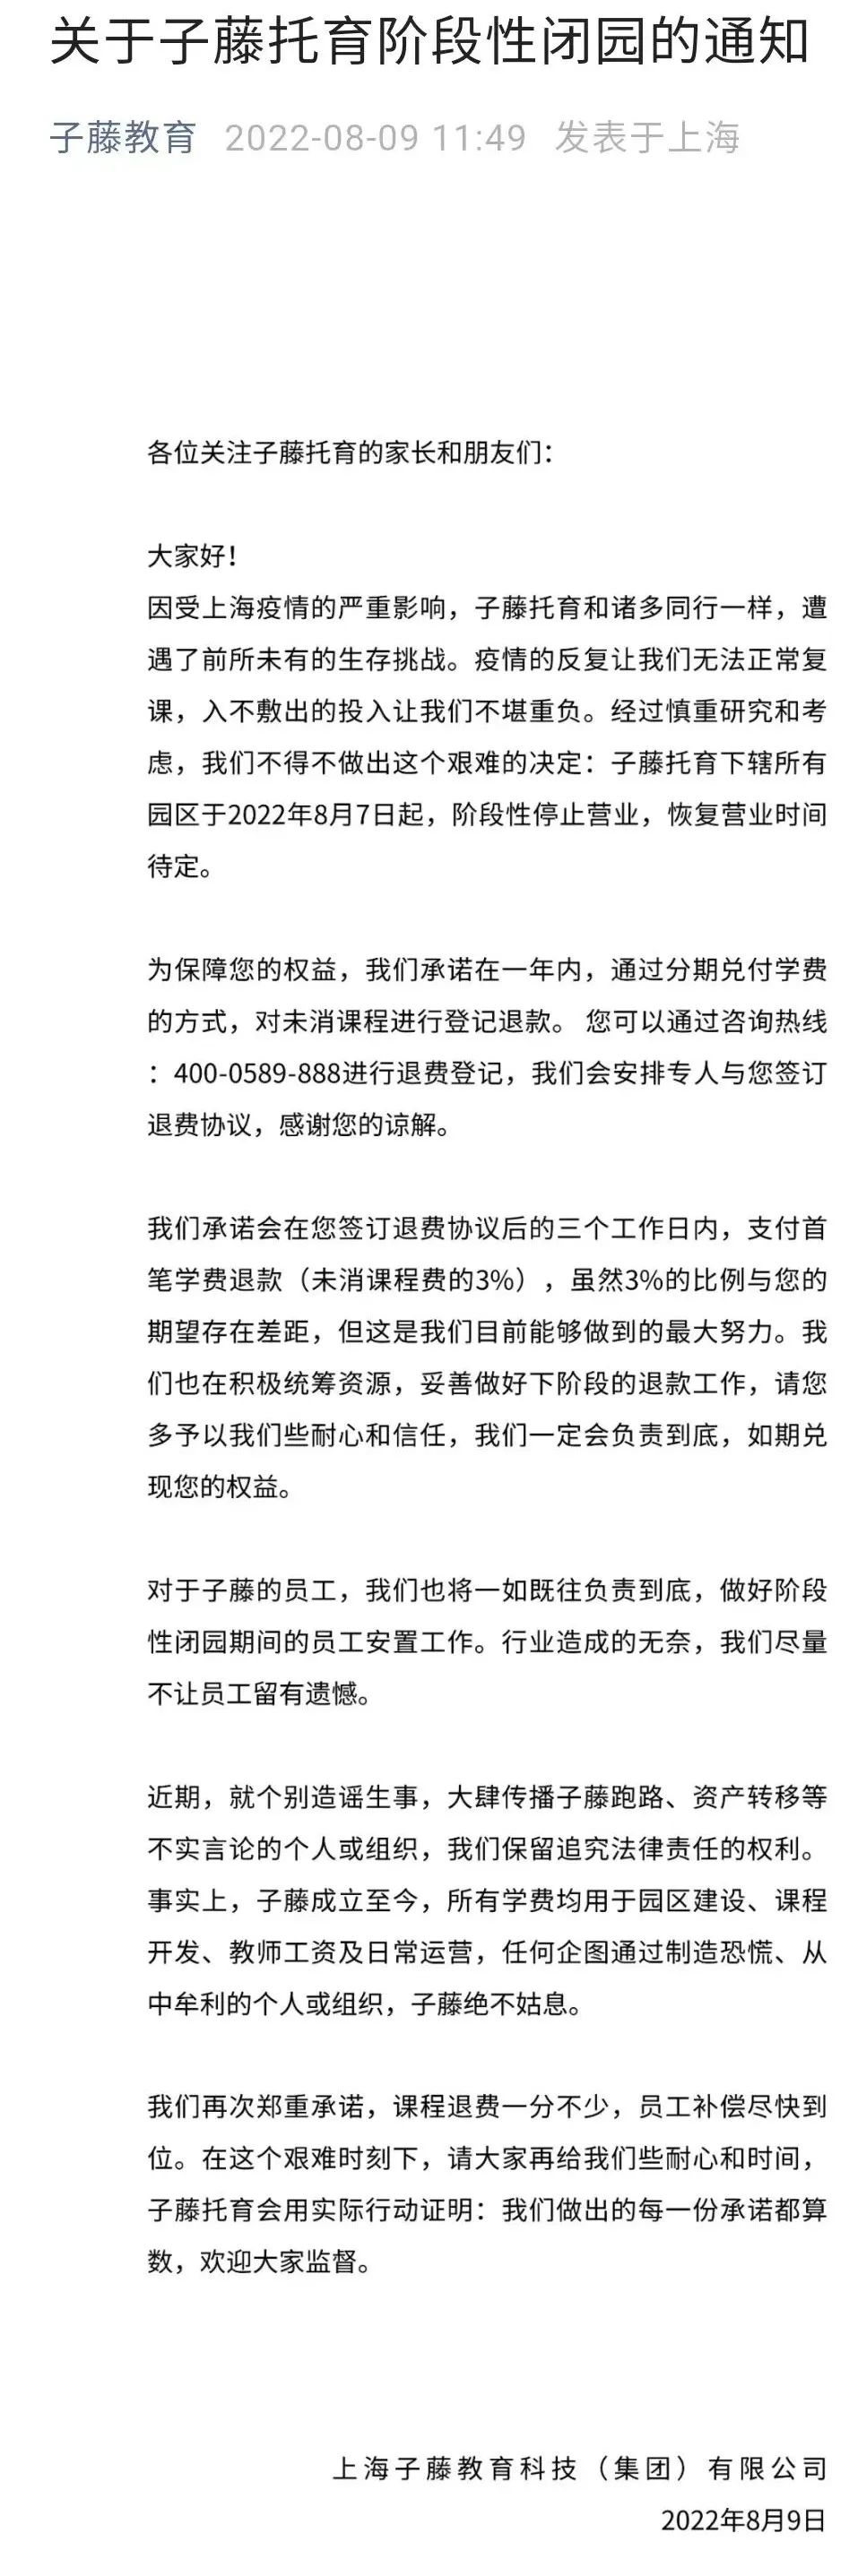 上海子藤教育旗下10个托育园全部停业